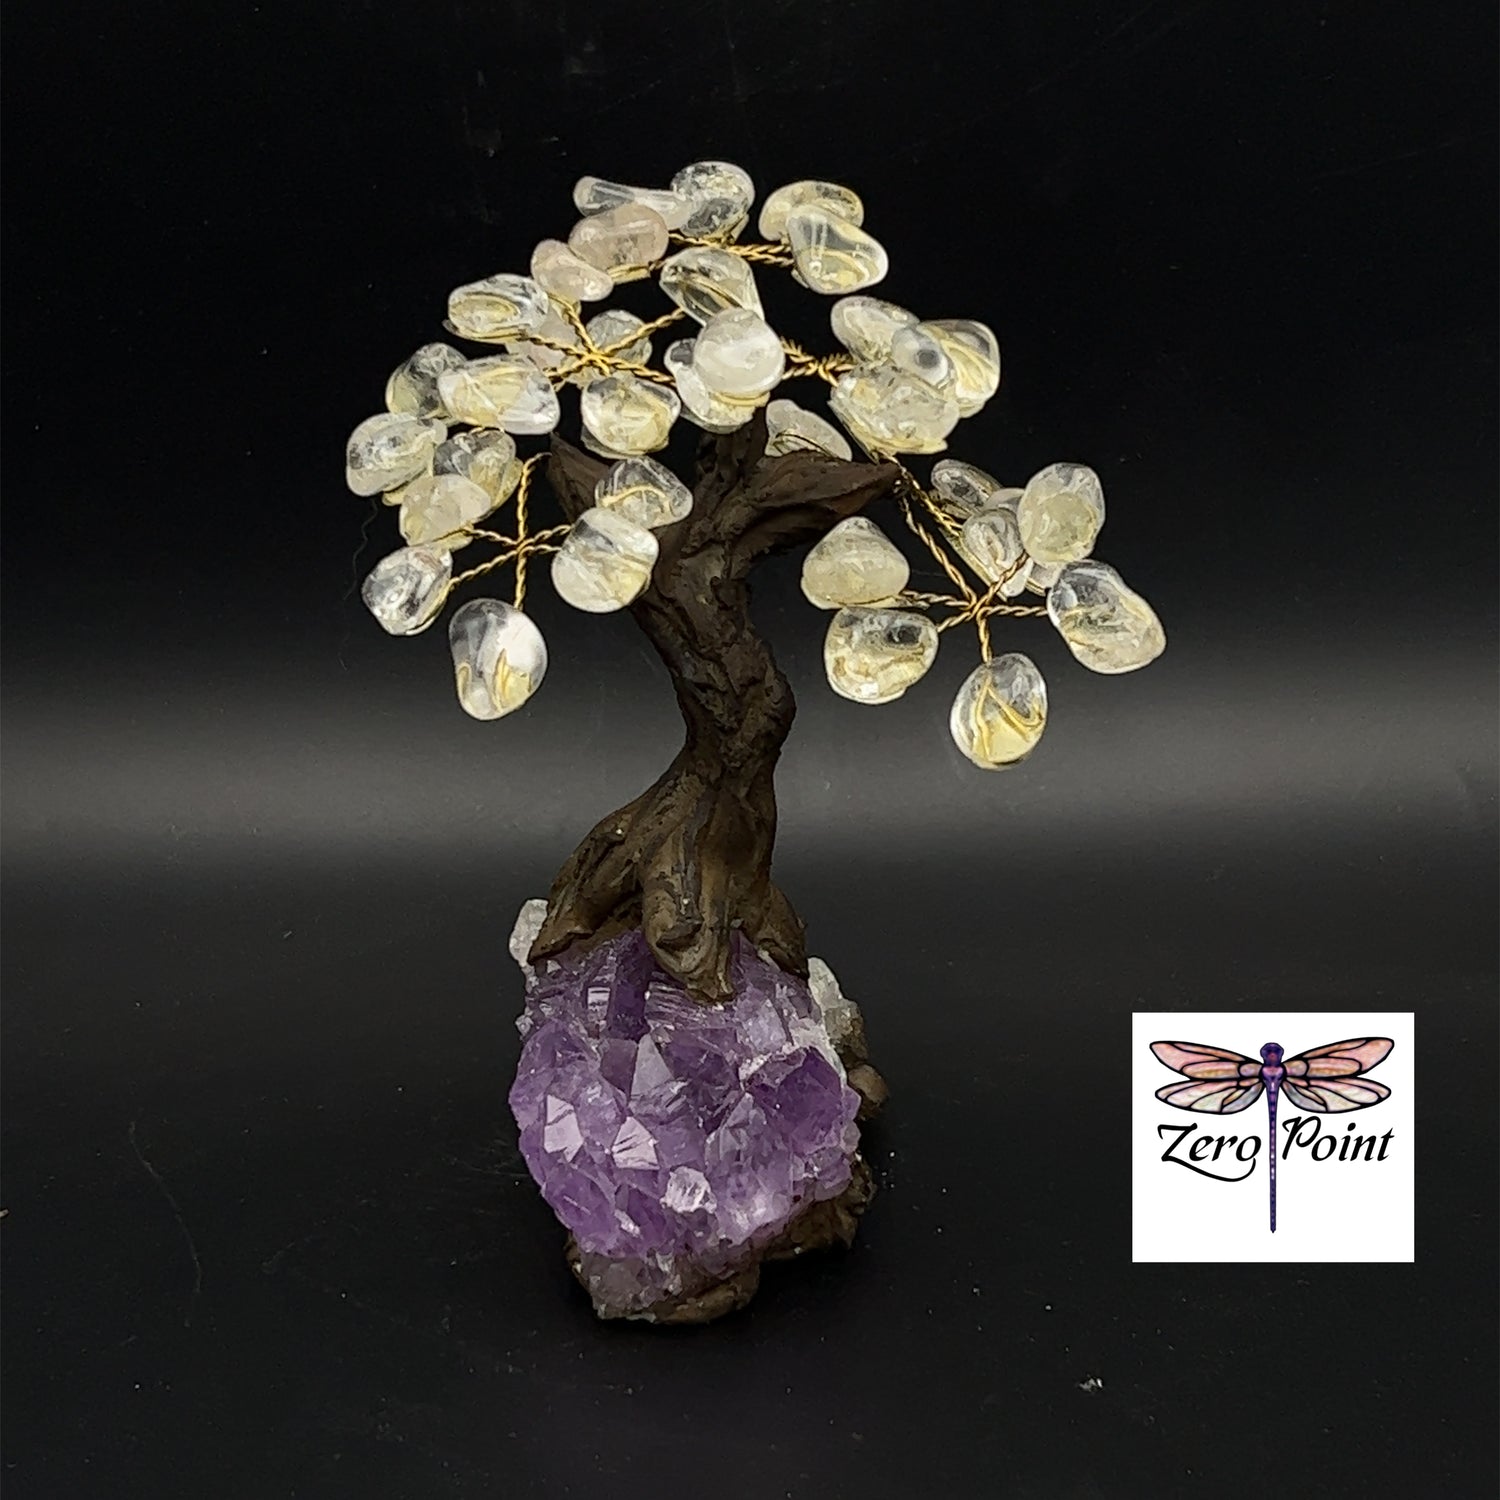 Gem Tree 6" - Zero Point Crystals